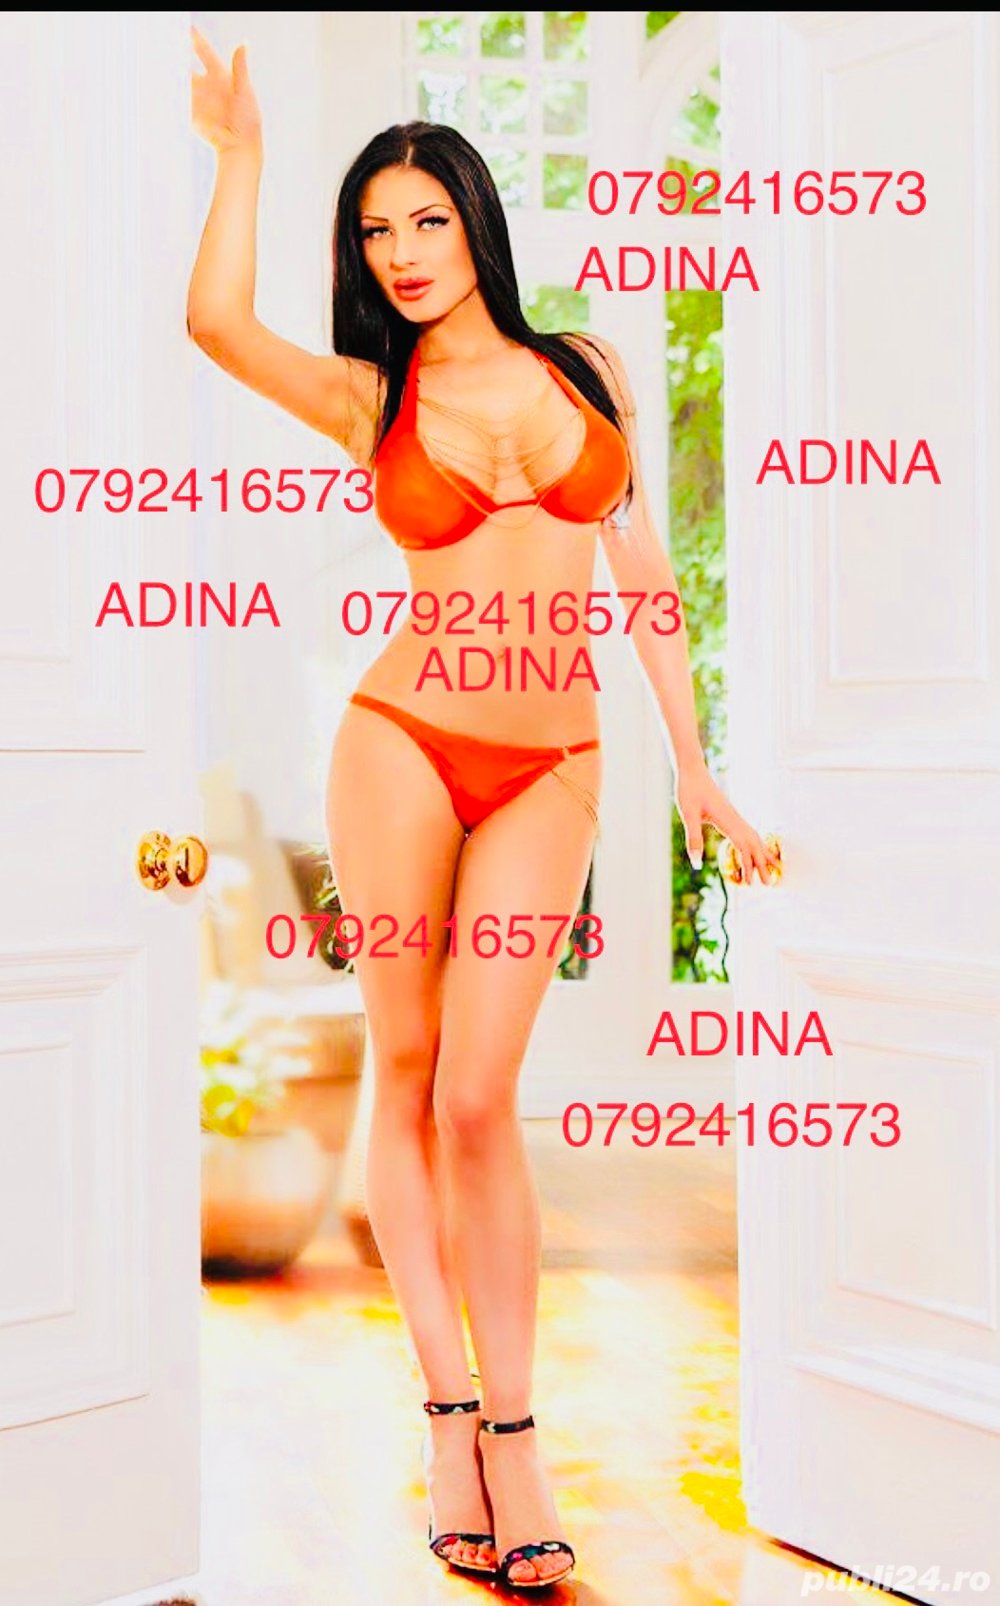 Adina lux escort  - imagine 2